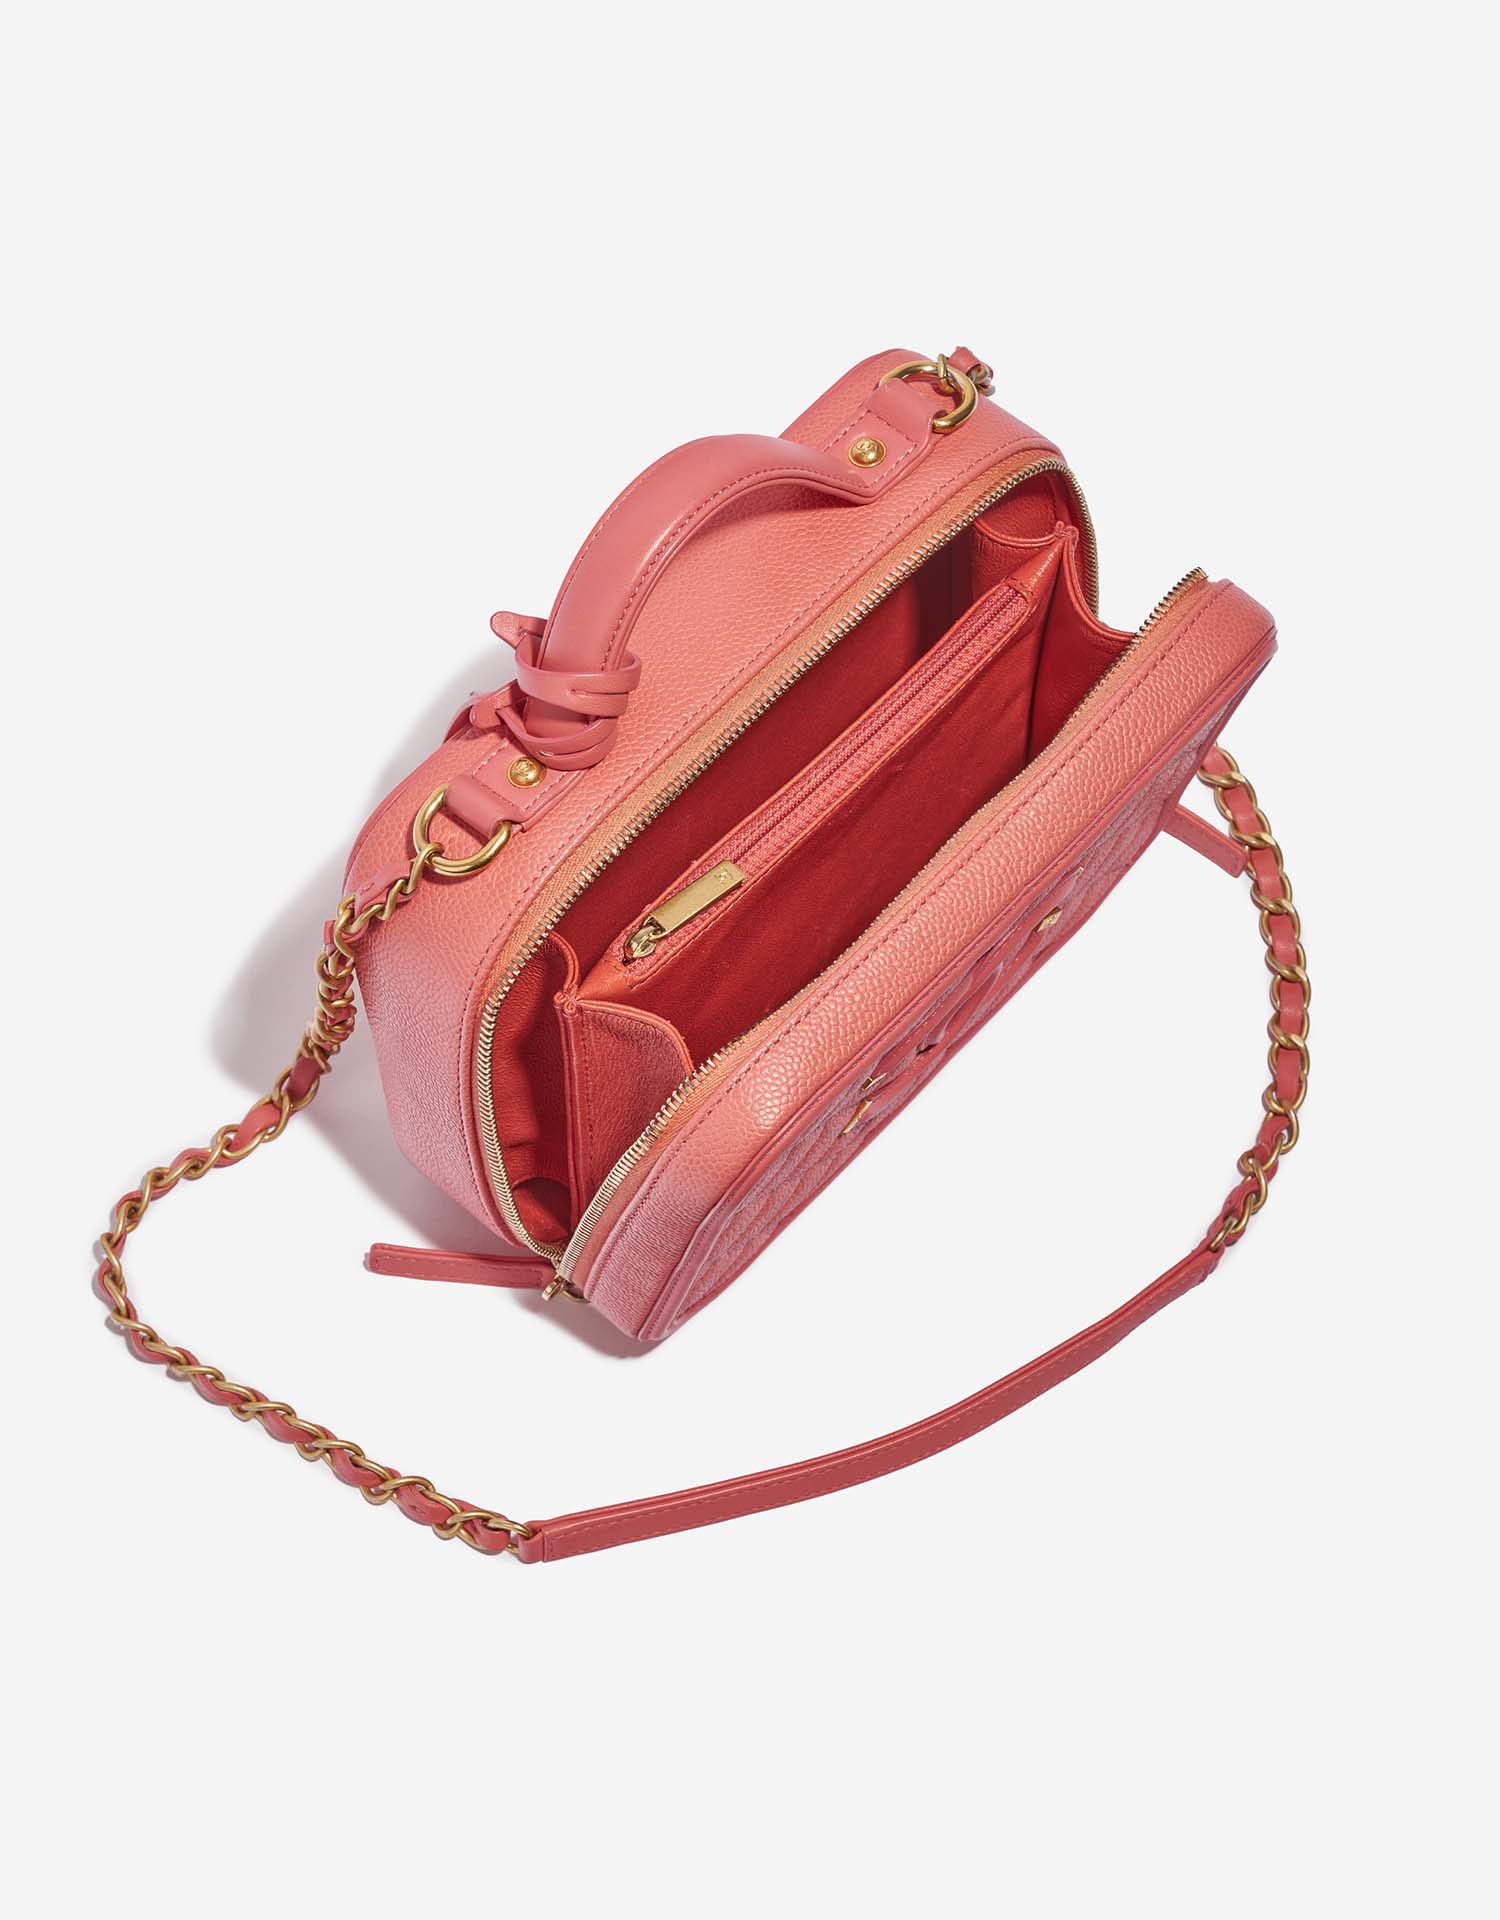 Chanel Vanity Medium Pink Inside | Verkaufen Sie Ihre Designer-Tasche auf Saclab.com